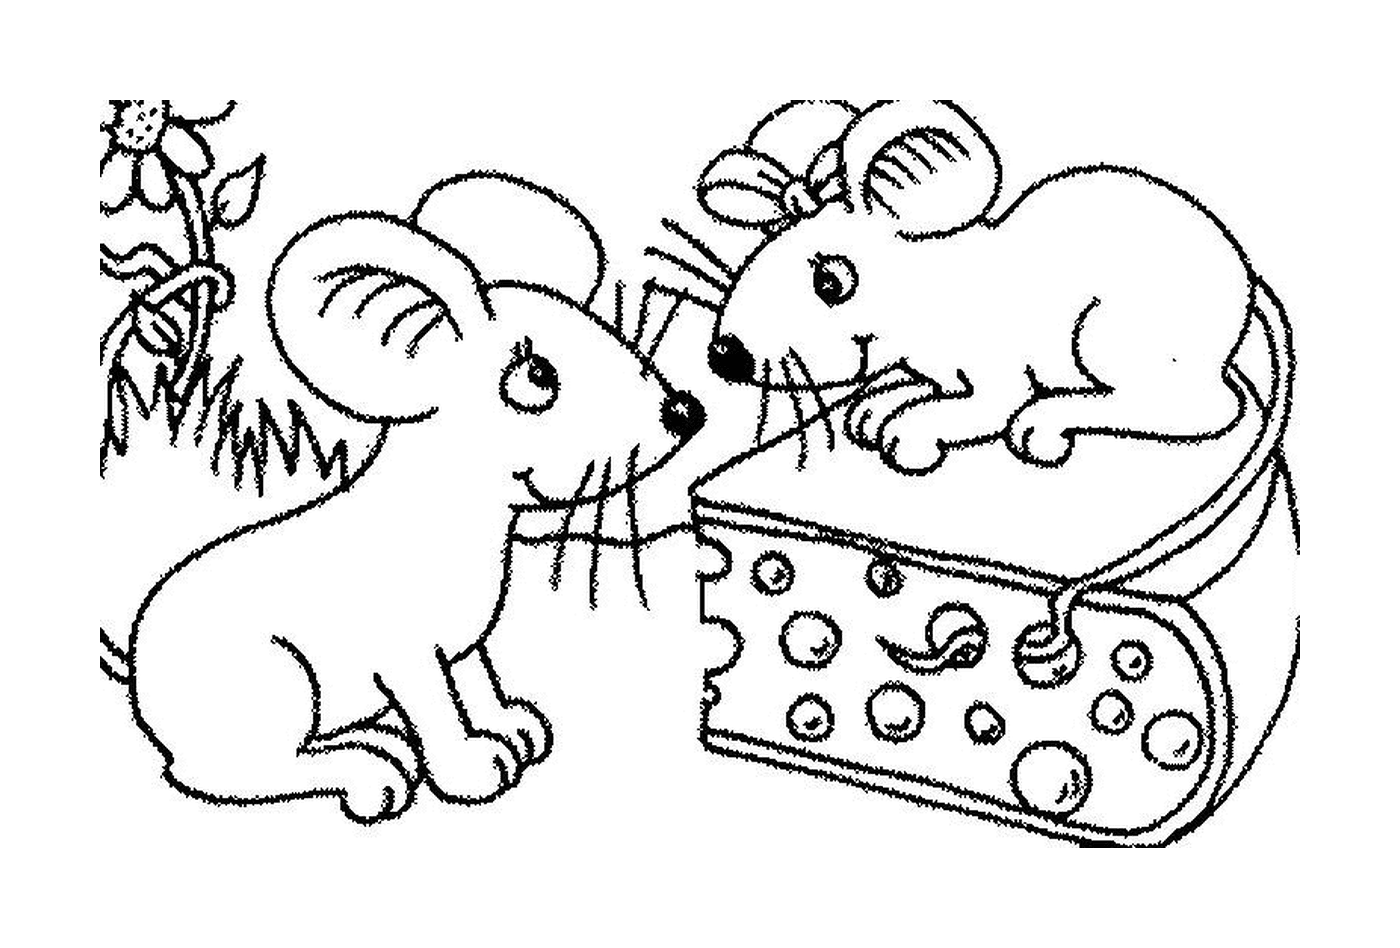  Dois ratos e um pedaço de queijo 